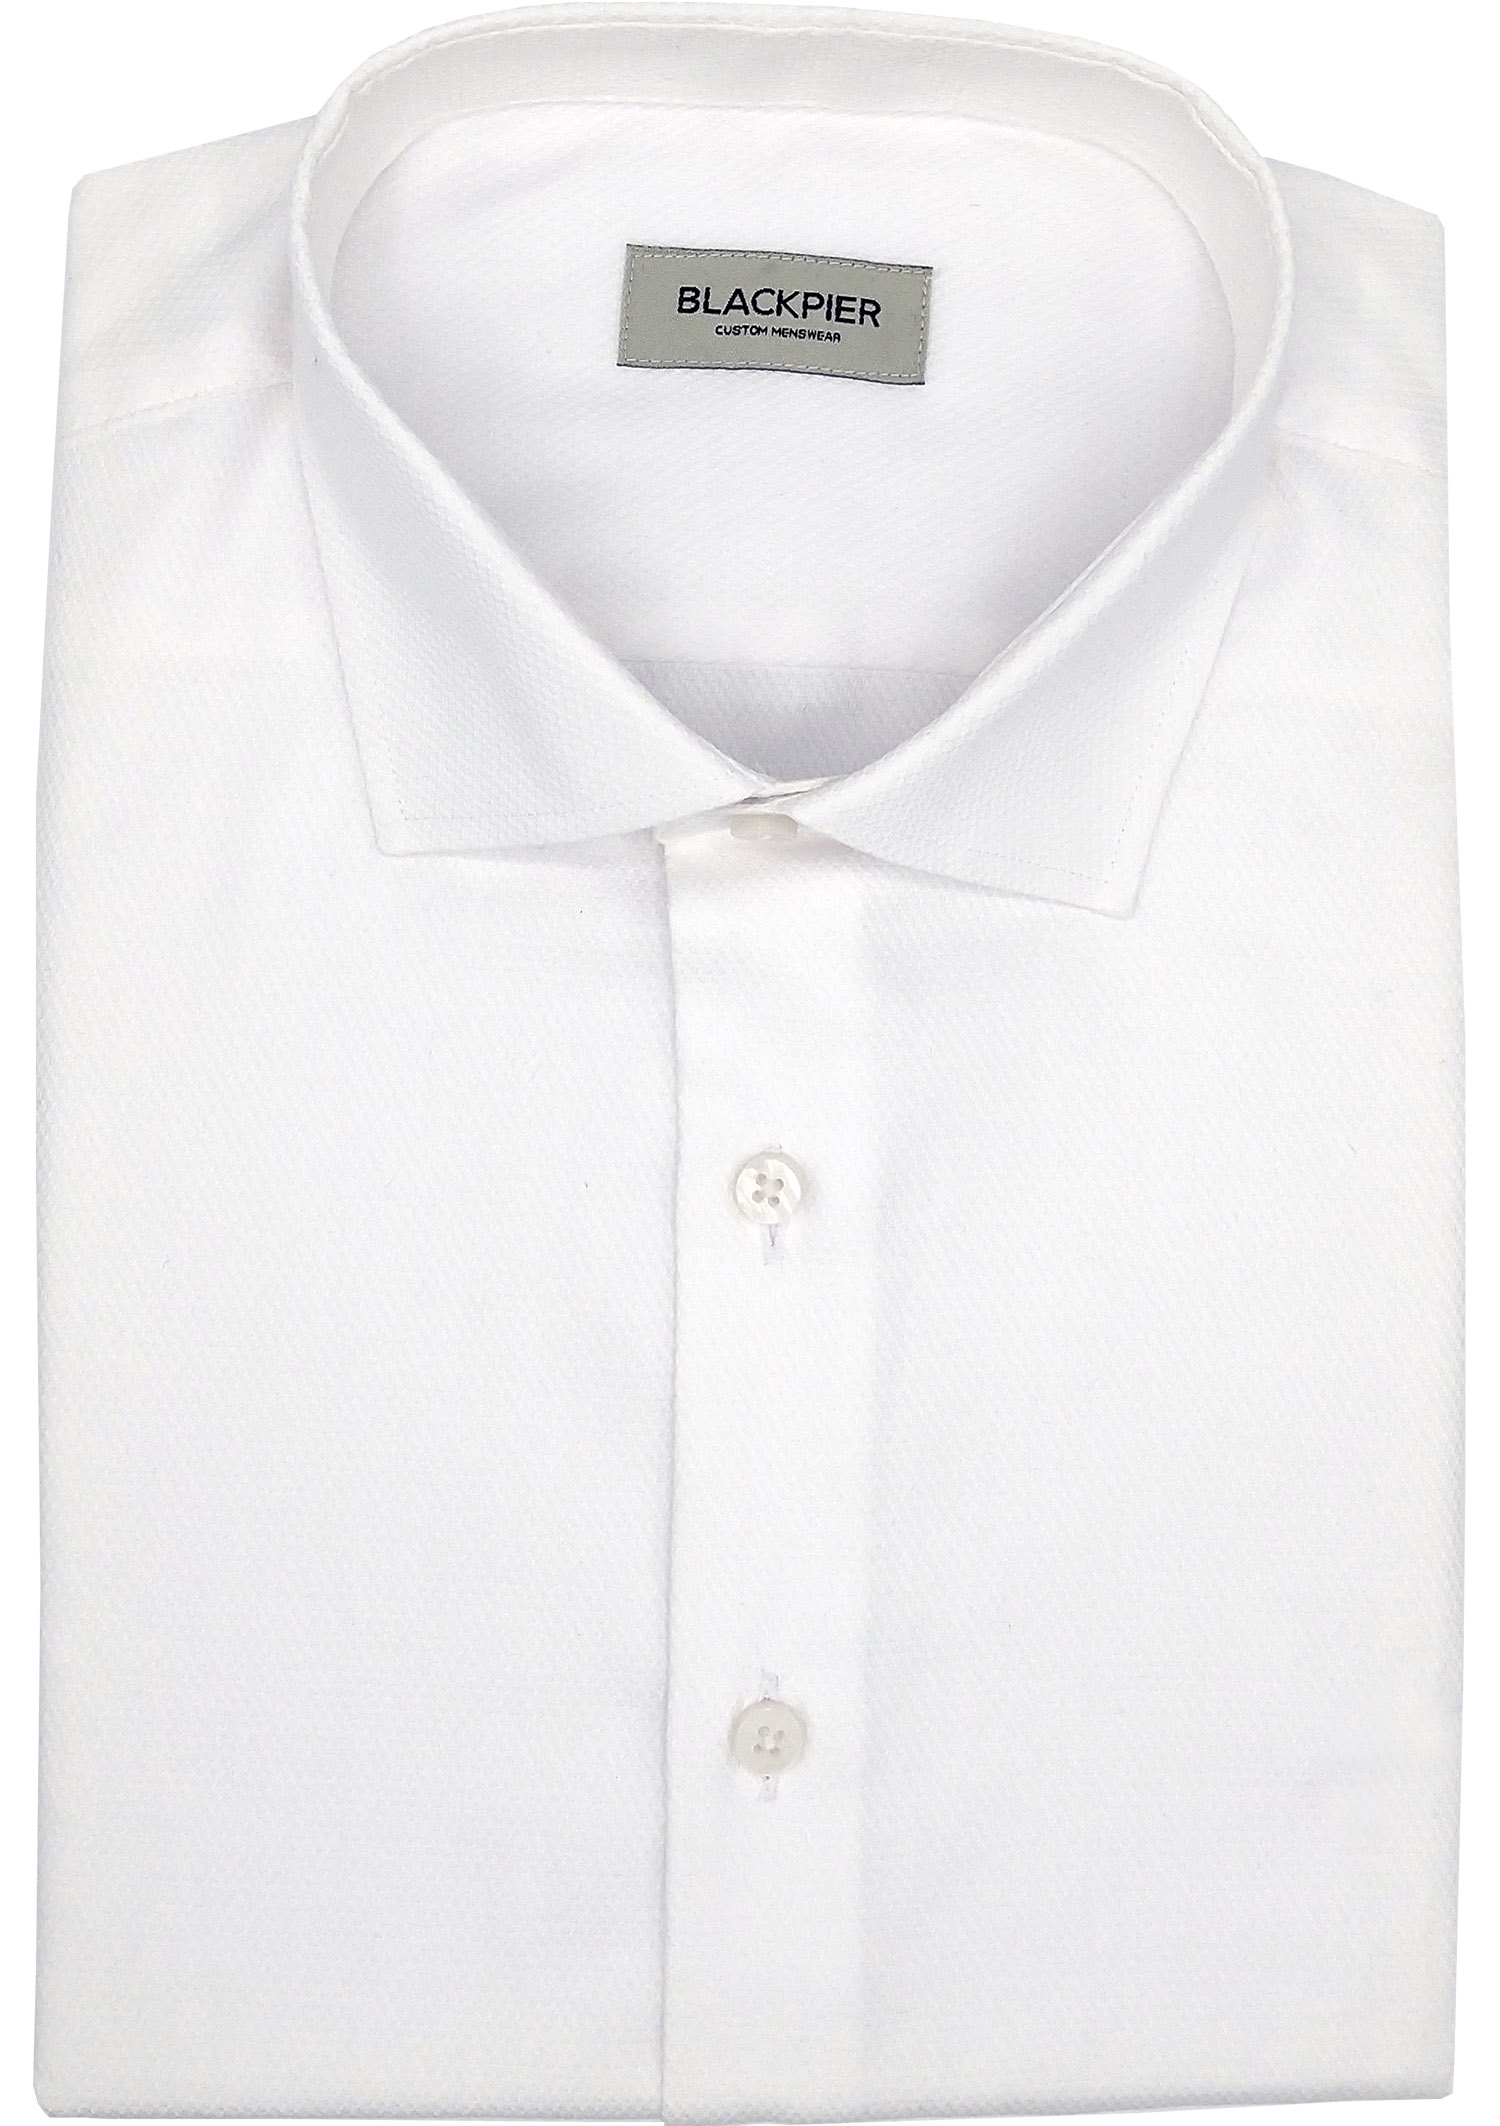 White shirt Pattern for man - Blackpier.com